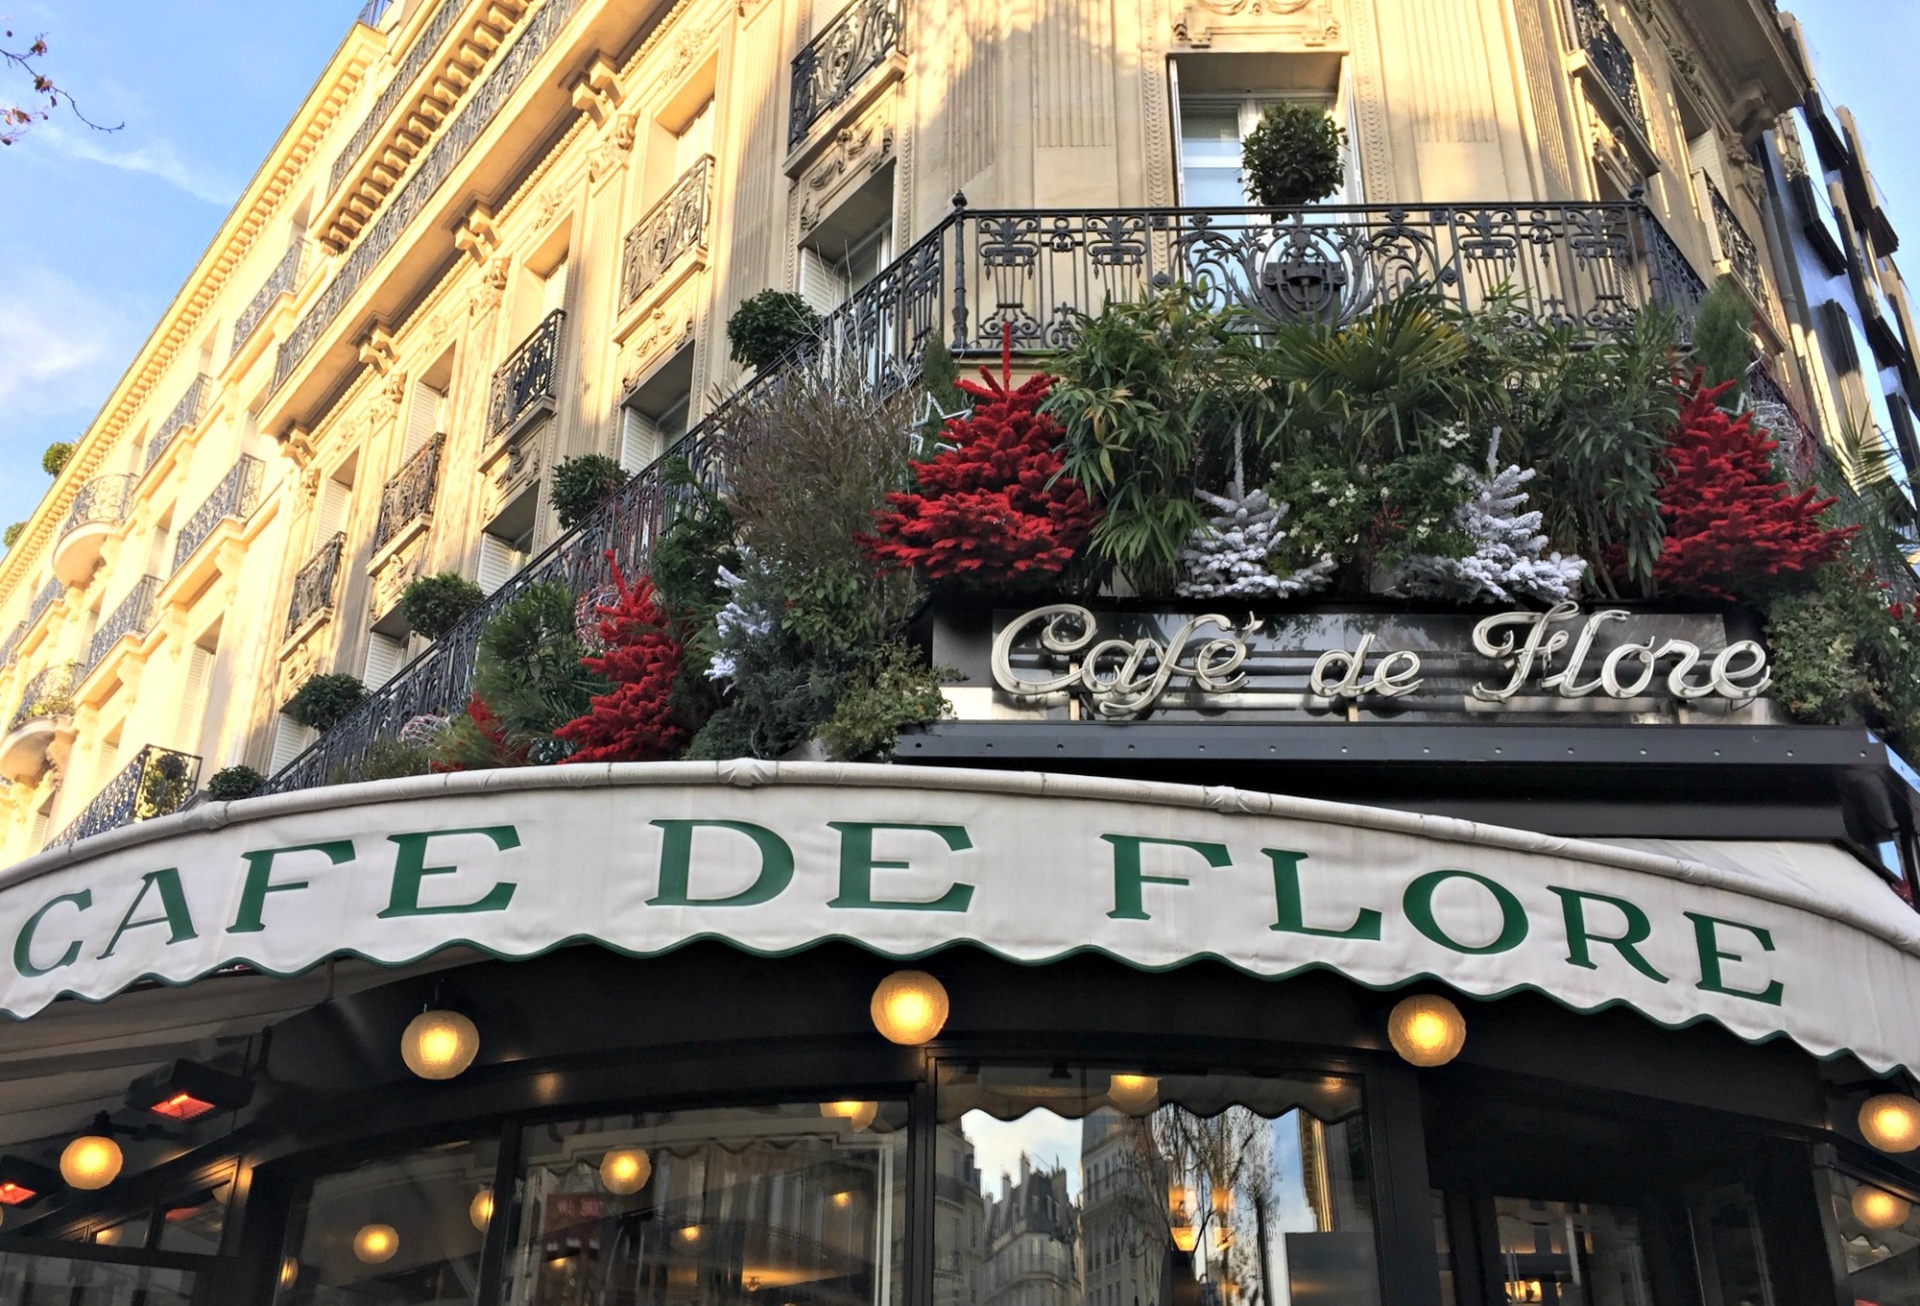 Paris St. Germain Cafe de Flore decorated for Christmas. Details at une femme d'un certain age.